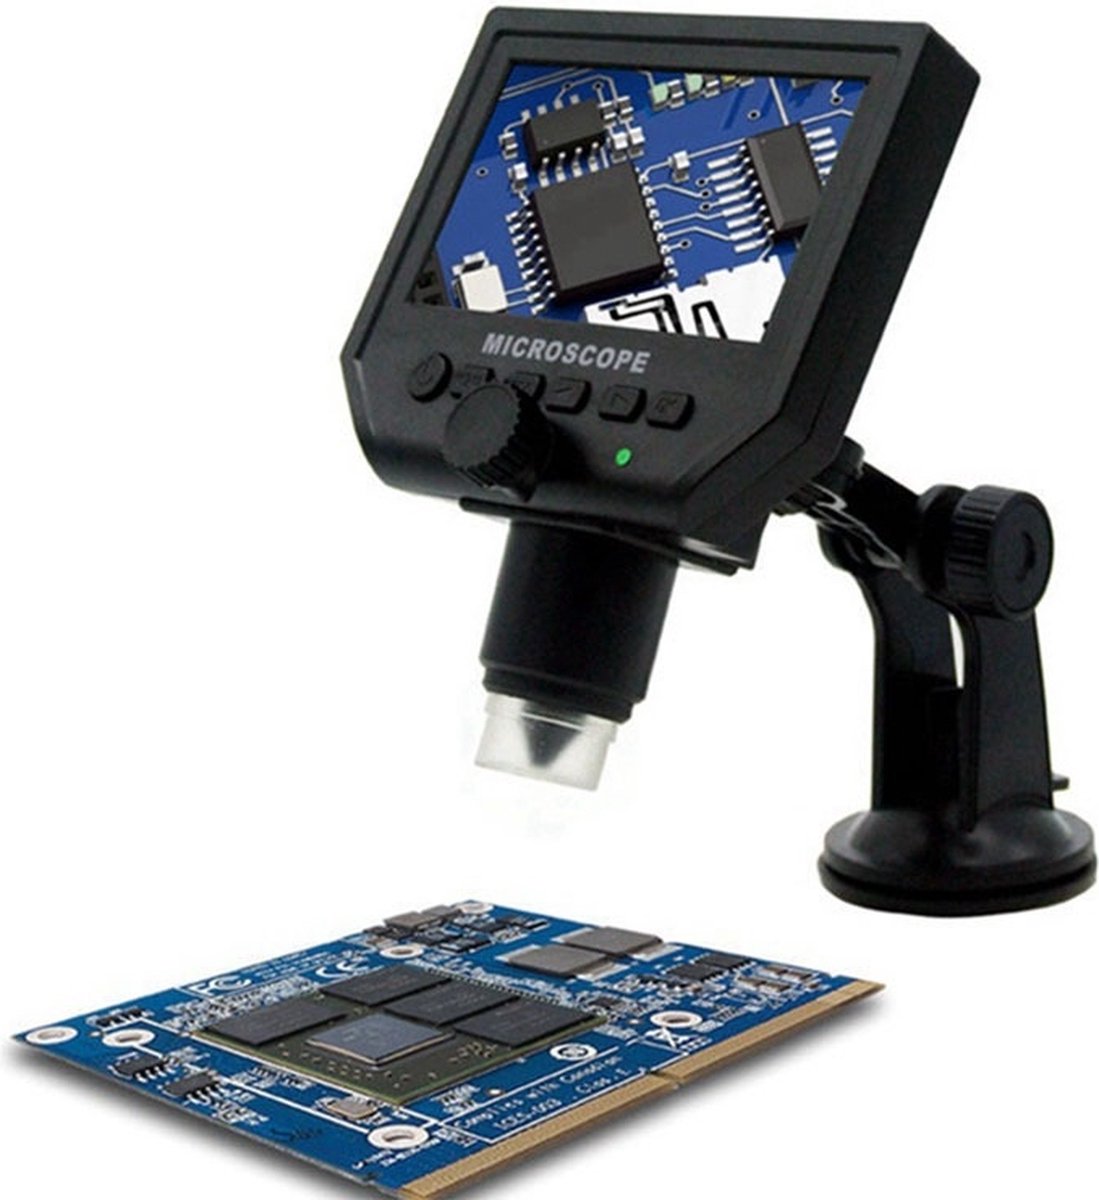 DrPhone DGM3 - Digitale Microscoop - 4.3 inch Scherm - 600X - 1080P met 3.6MP Camerasensor - 8 LED-lampjes - Met ABS Standaard - Zwart